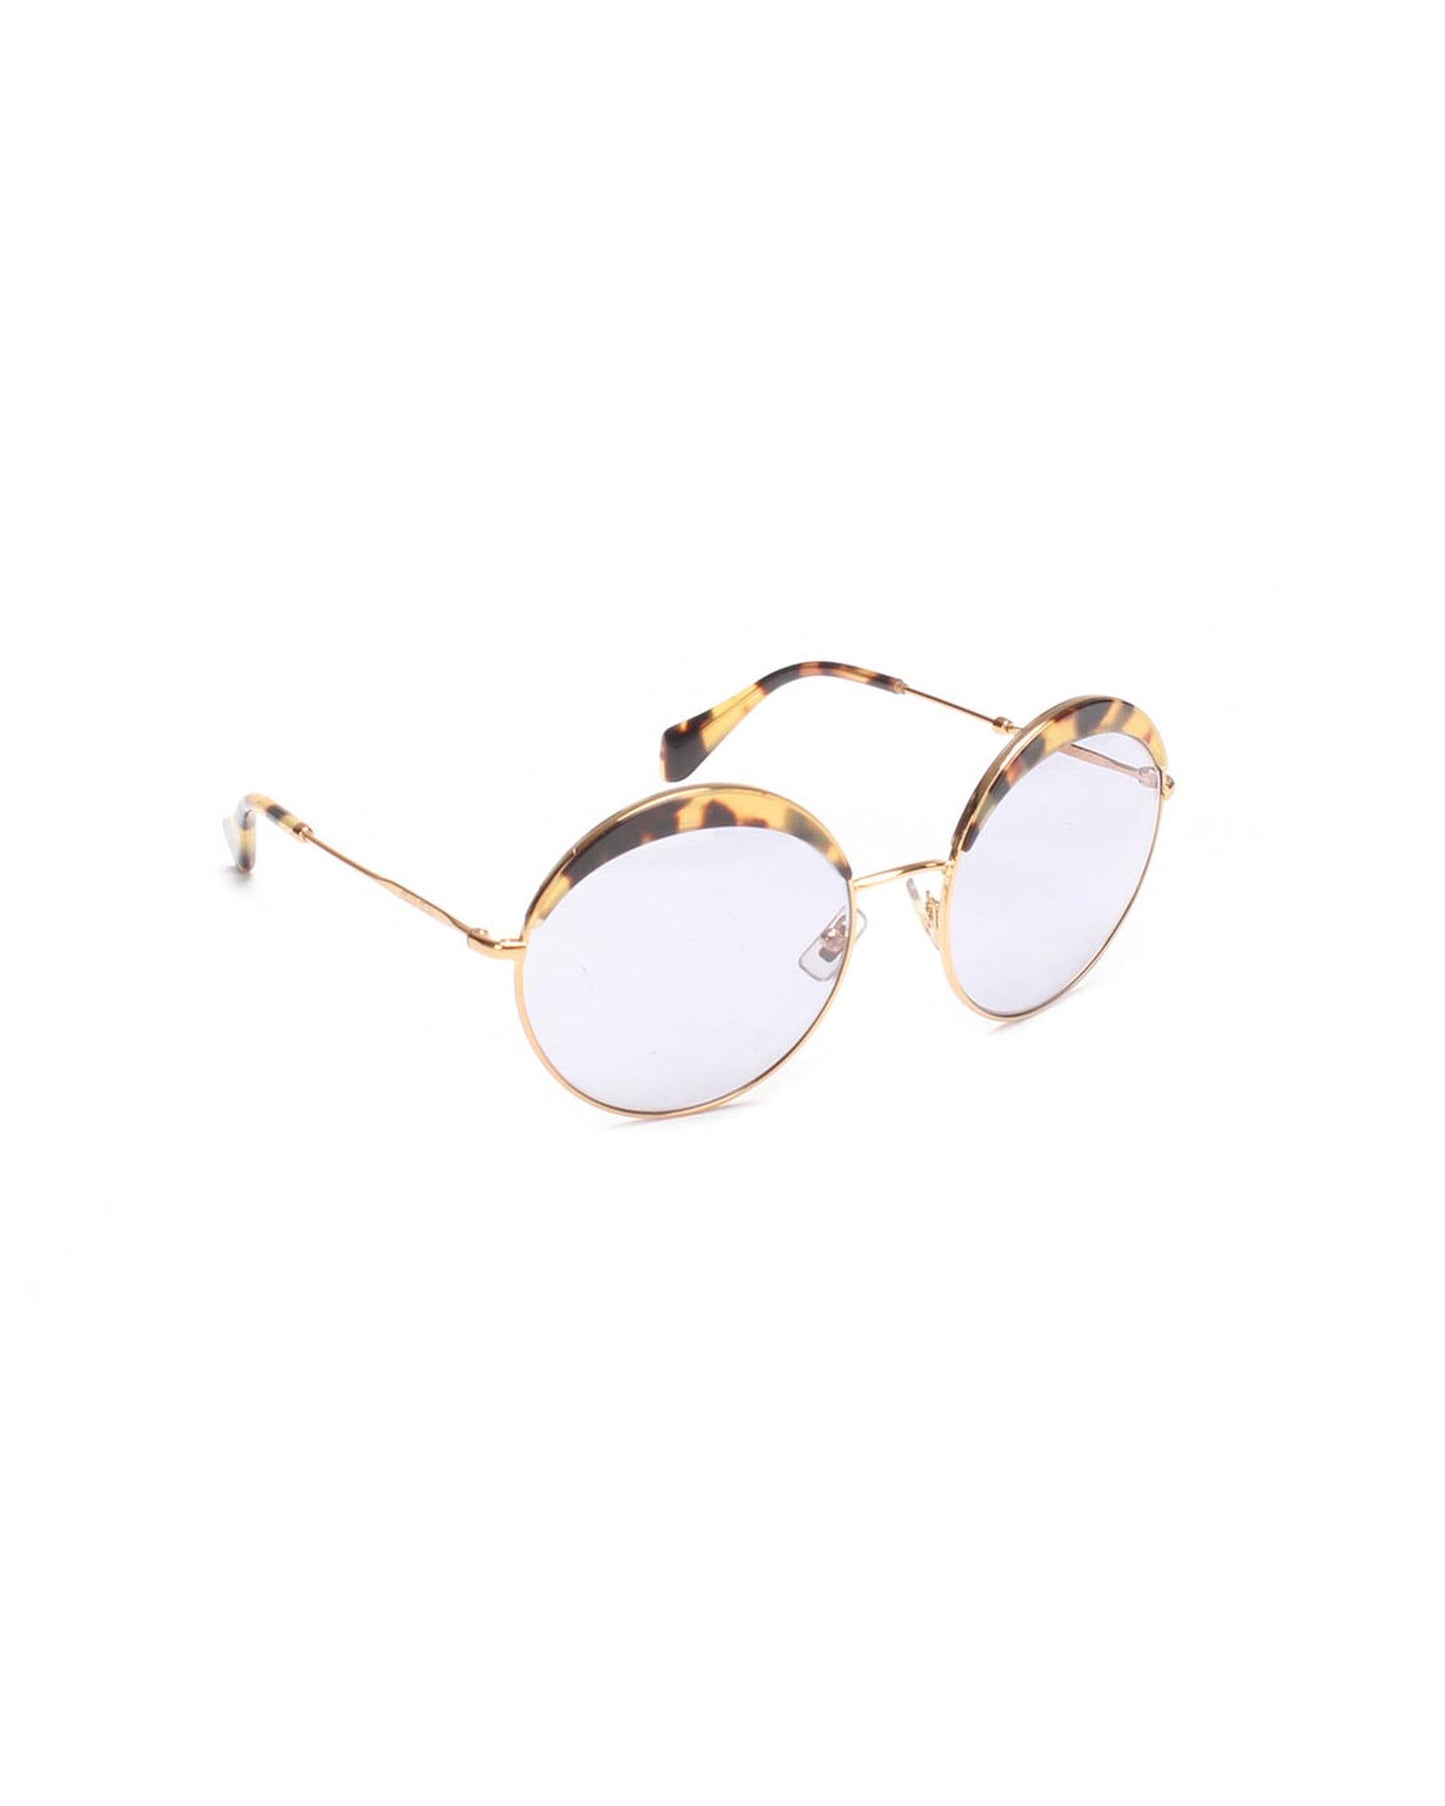 Miu Miu Women's Tortoiseshell Round Sunglasses in Gold